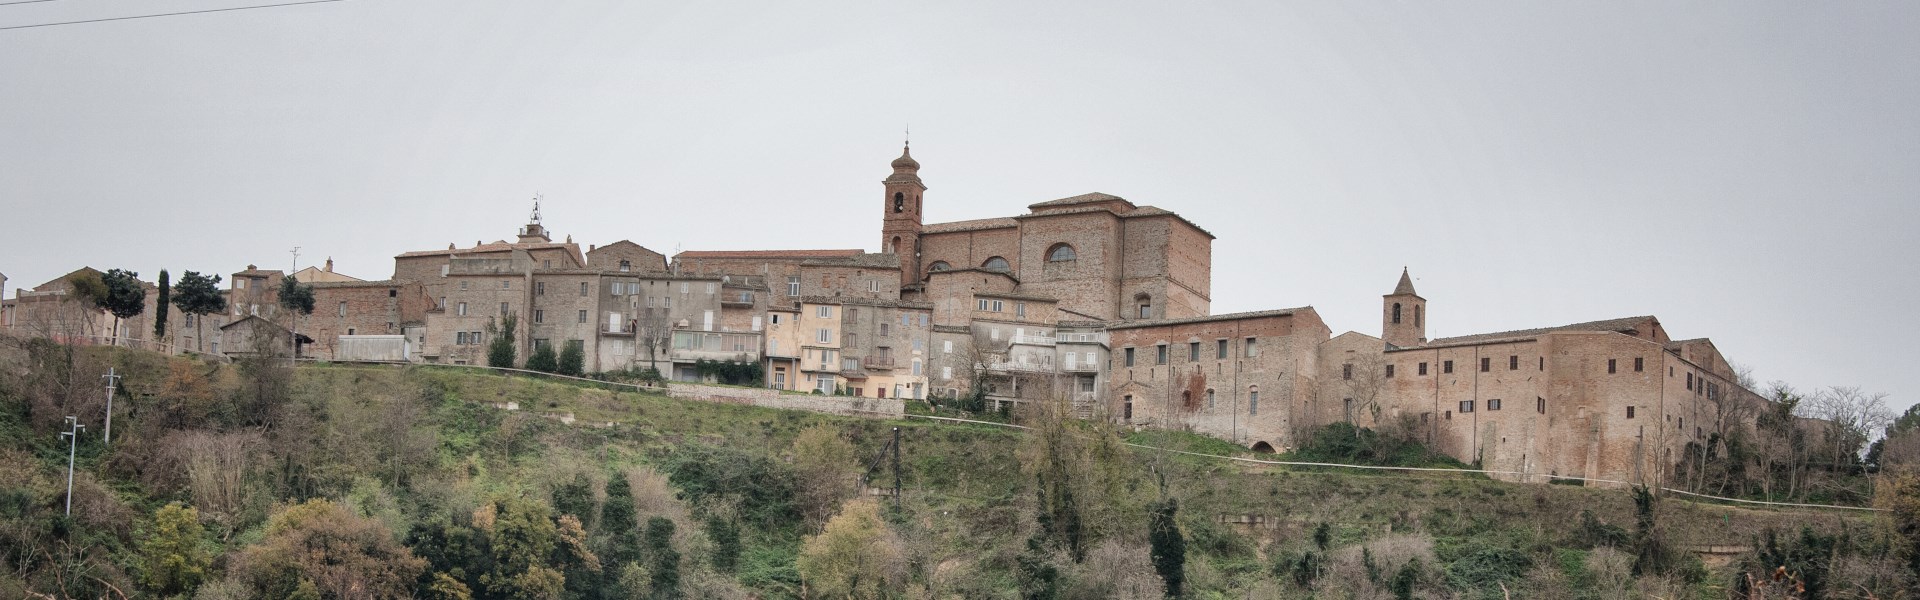 Montefiore Dell'Aso - Panorama